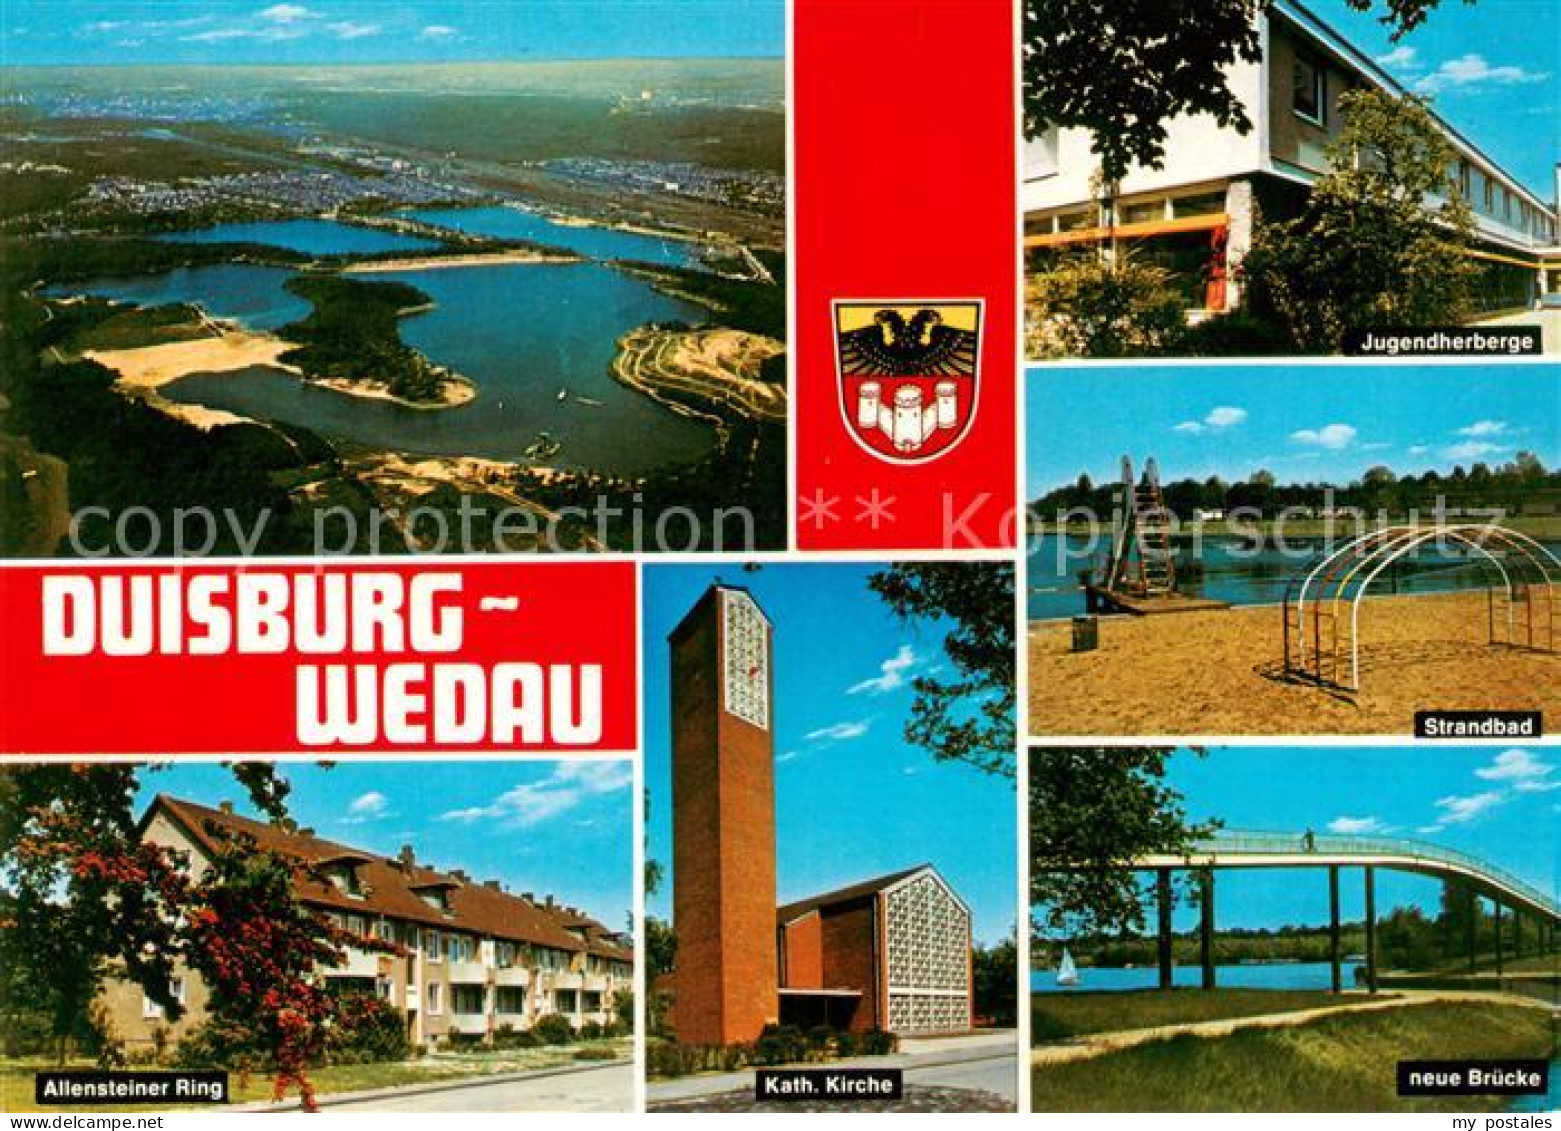 73866240 Wedau Duisburg Fliegeraufnahme Jugendherberge Strandbad Allensteiner Ri - Duisburg